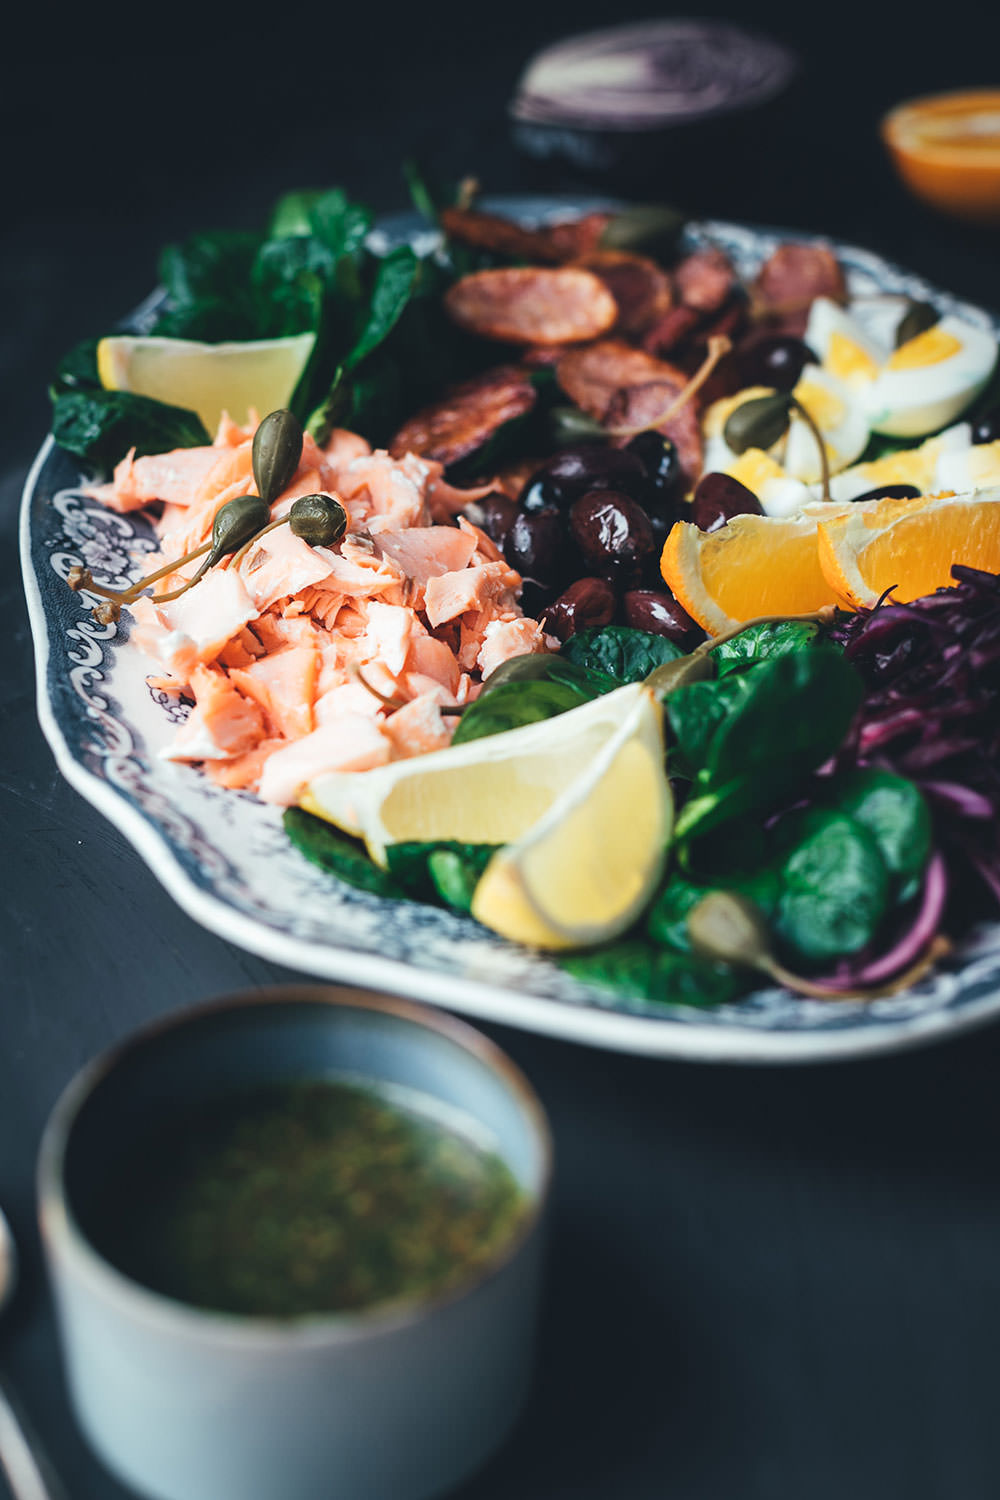 Rezept für winterlichen Salade niçoise (Nizza Salat) mit Pulled Lachs (Werbung) | festliche Salatplatte mit Feldsalat, Rotkohl und vielem mehr | moeyskitchen.com #salat #salatrezept #rezepte #lachs #lachsfilet #foodblogger #nizzasalat #saladenicoise